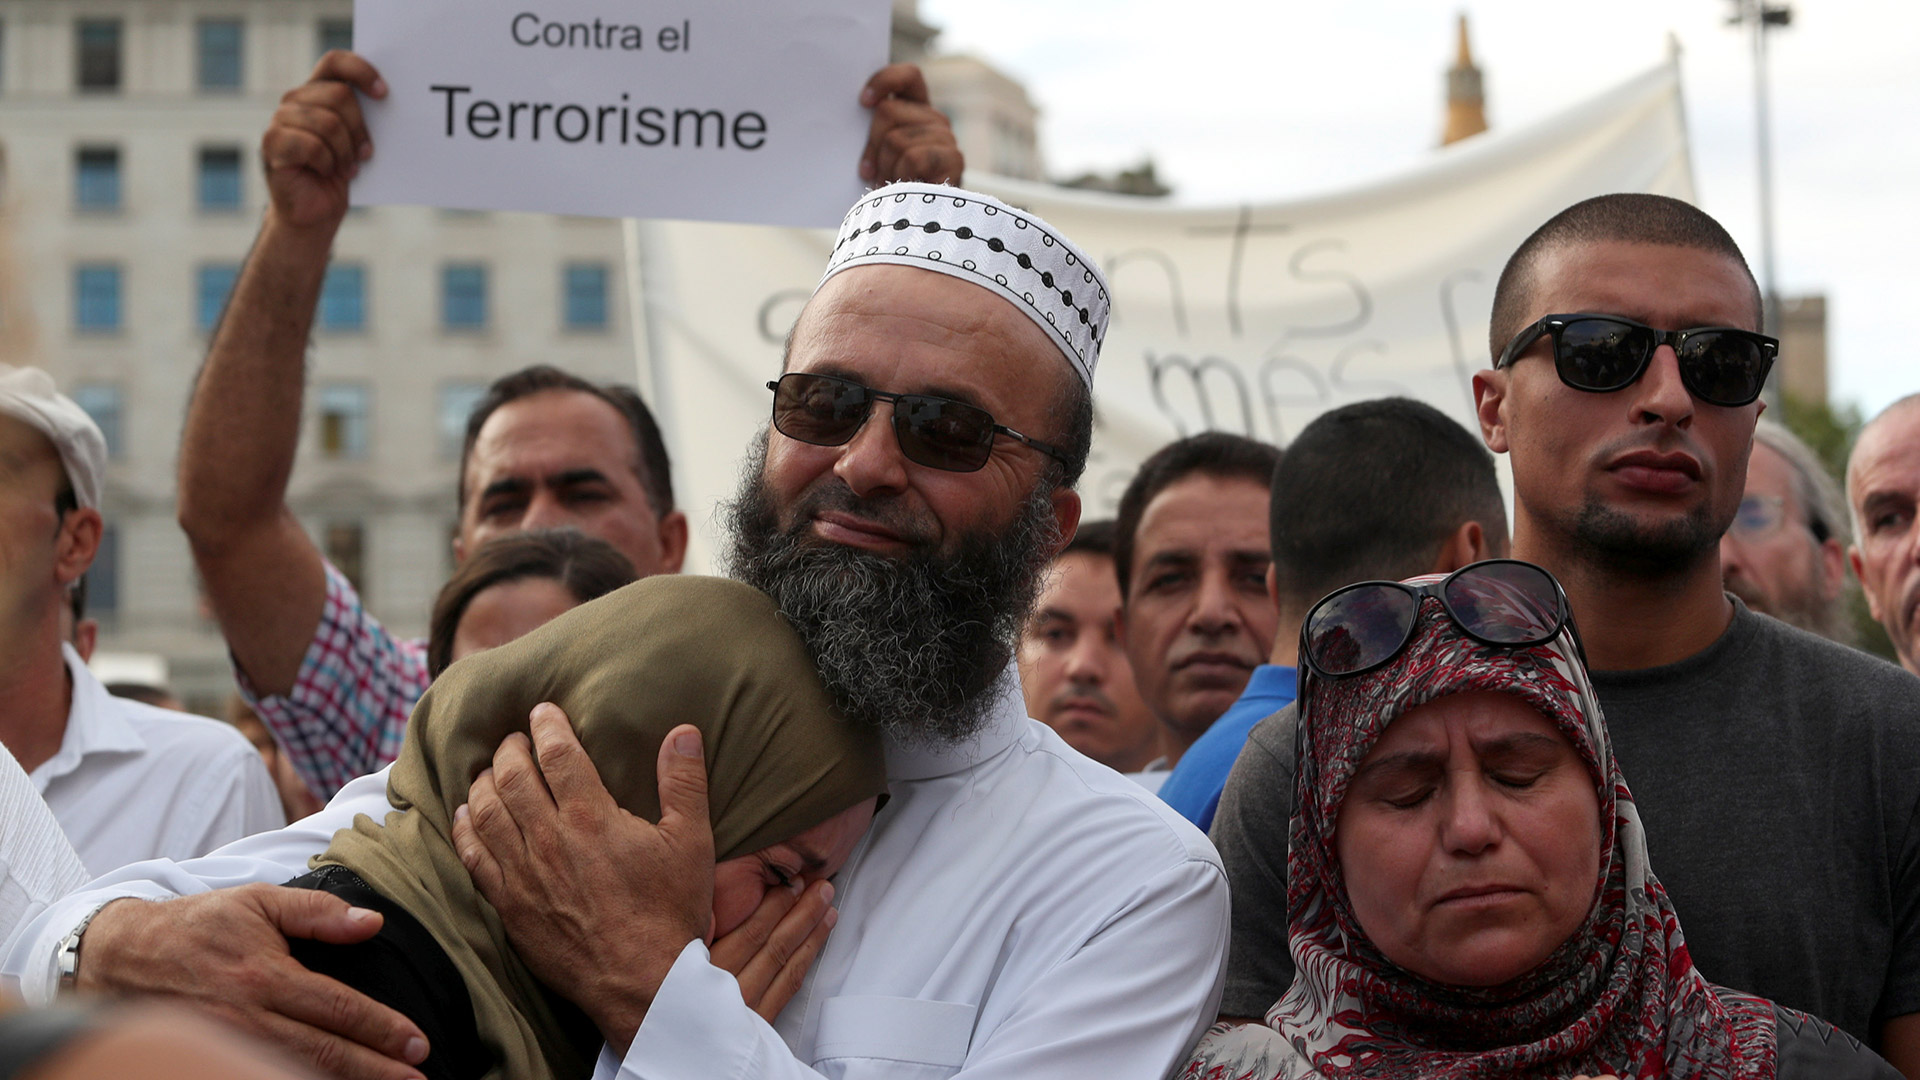 La comunidad musulmana de Barcelona se manifiesta en contra del terrorismo